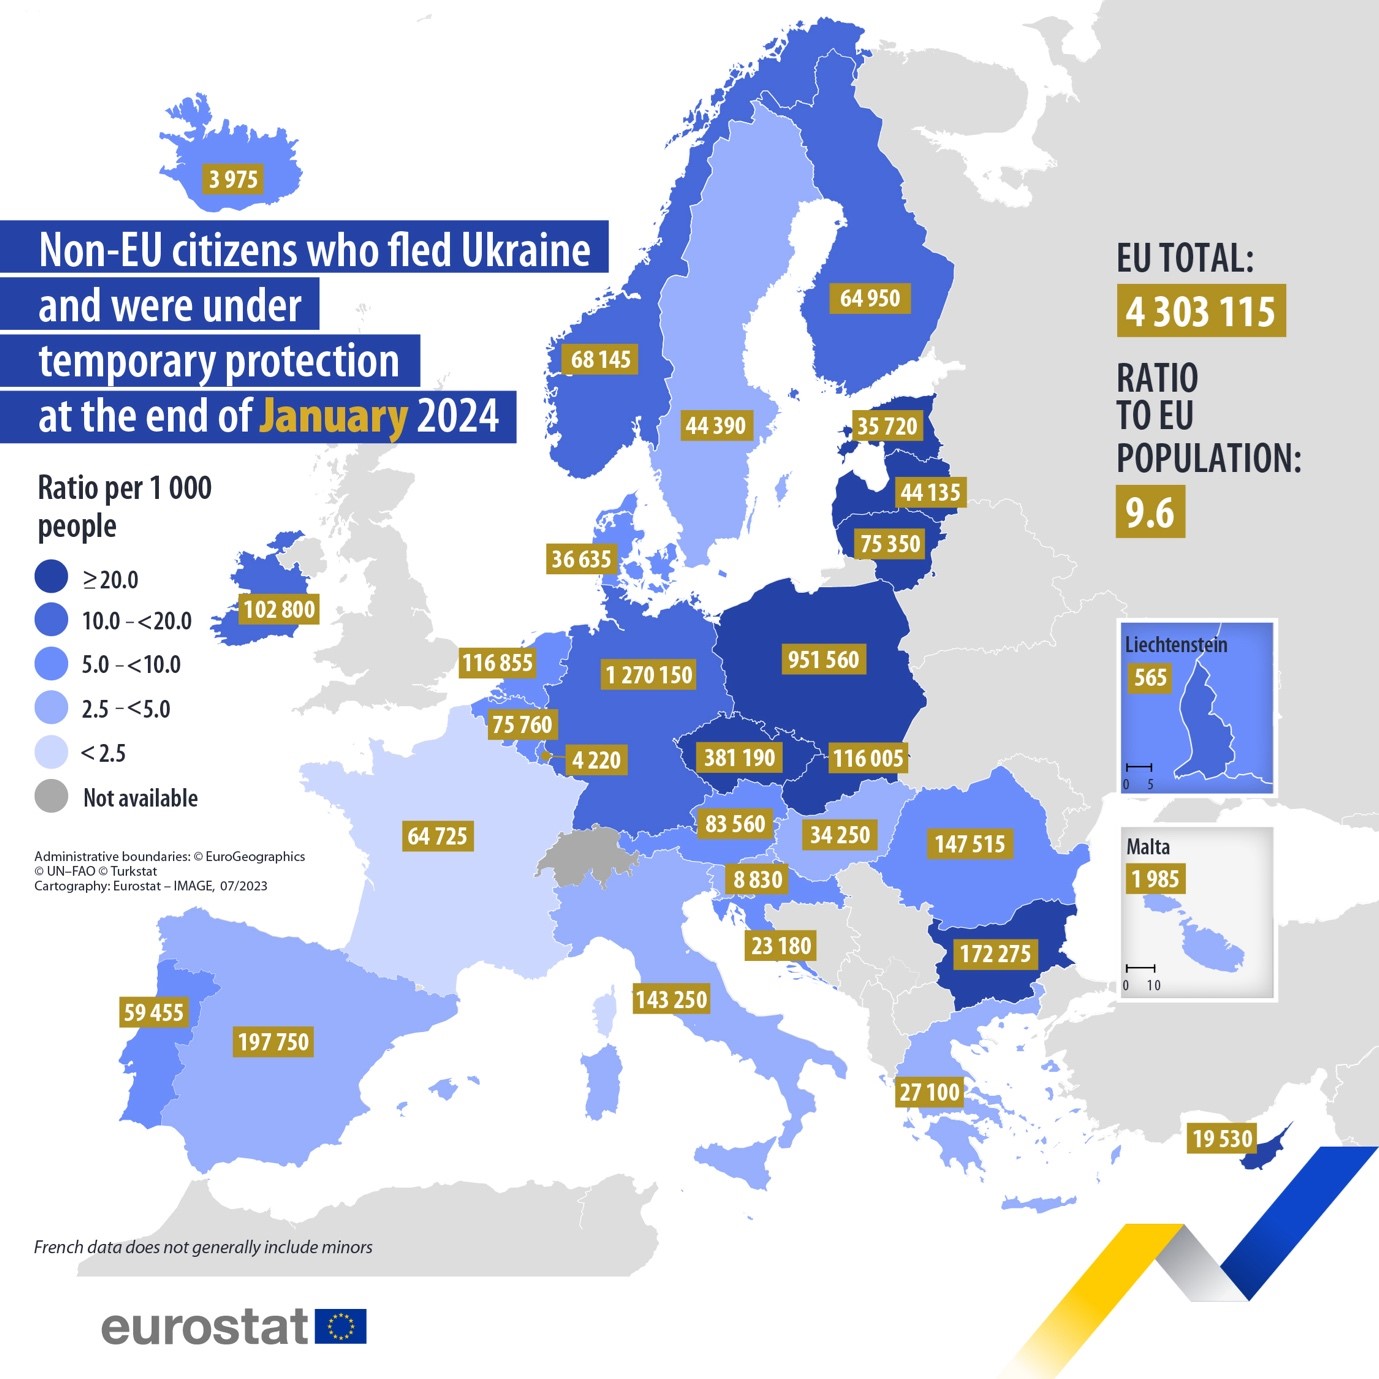 Négymillió fölött van az ukrán menekültek száma az EU-ban